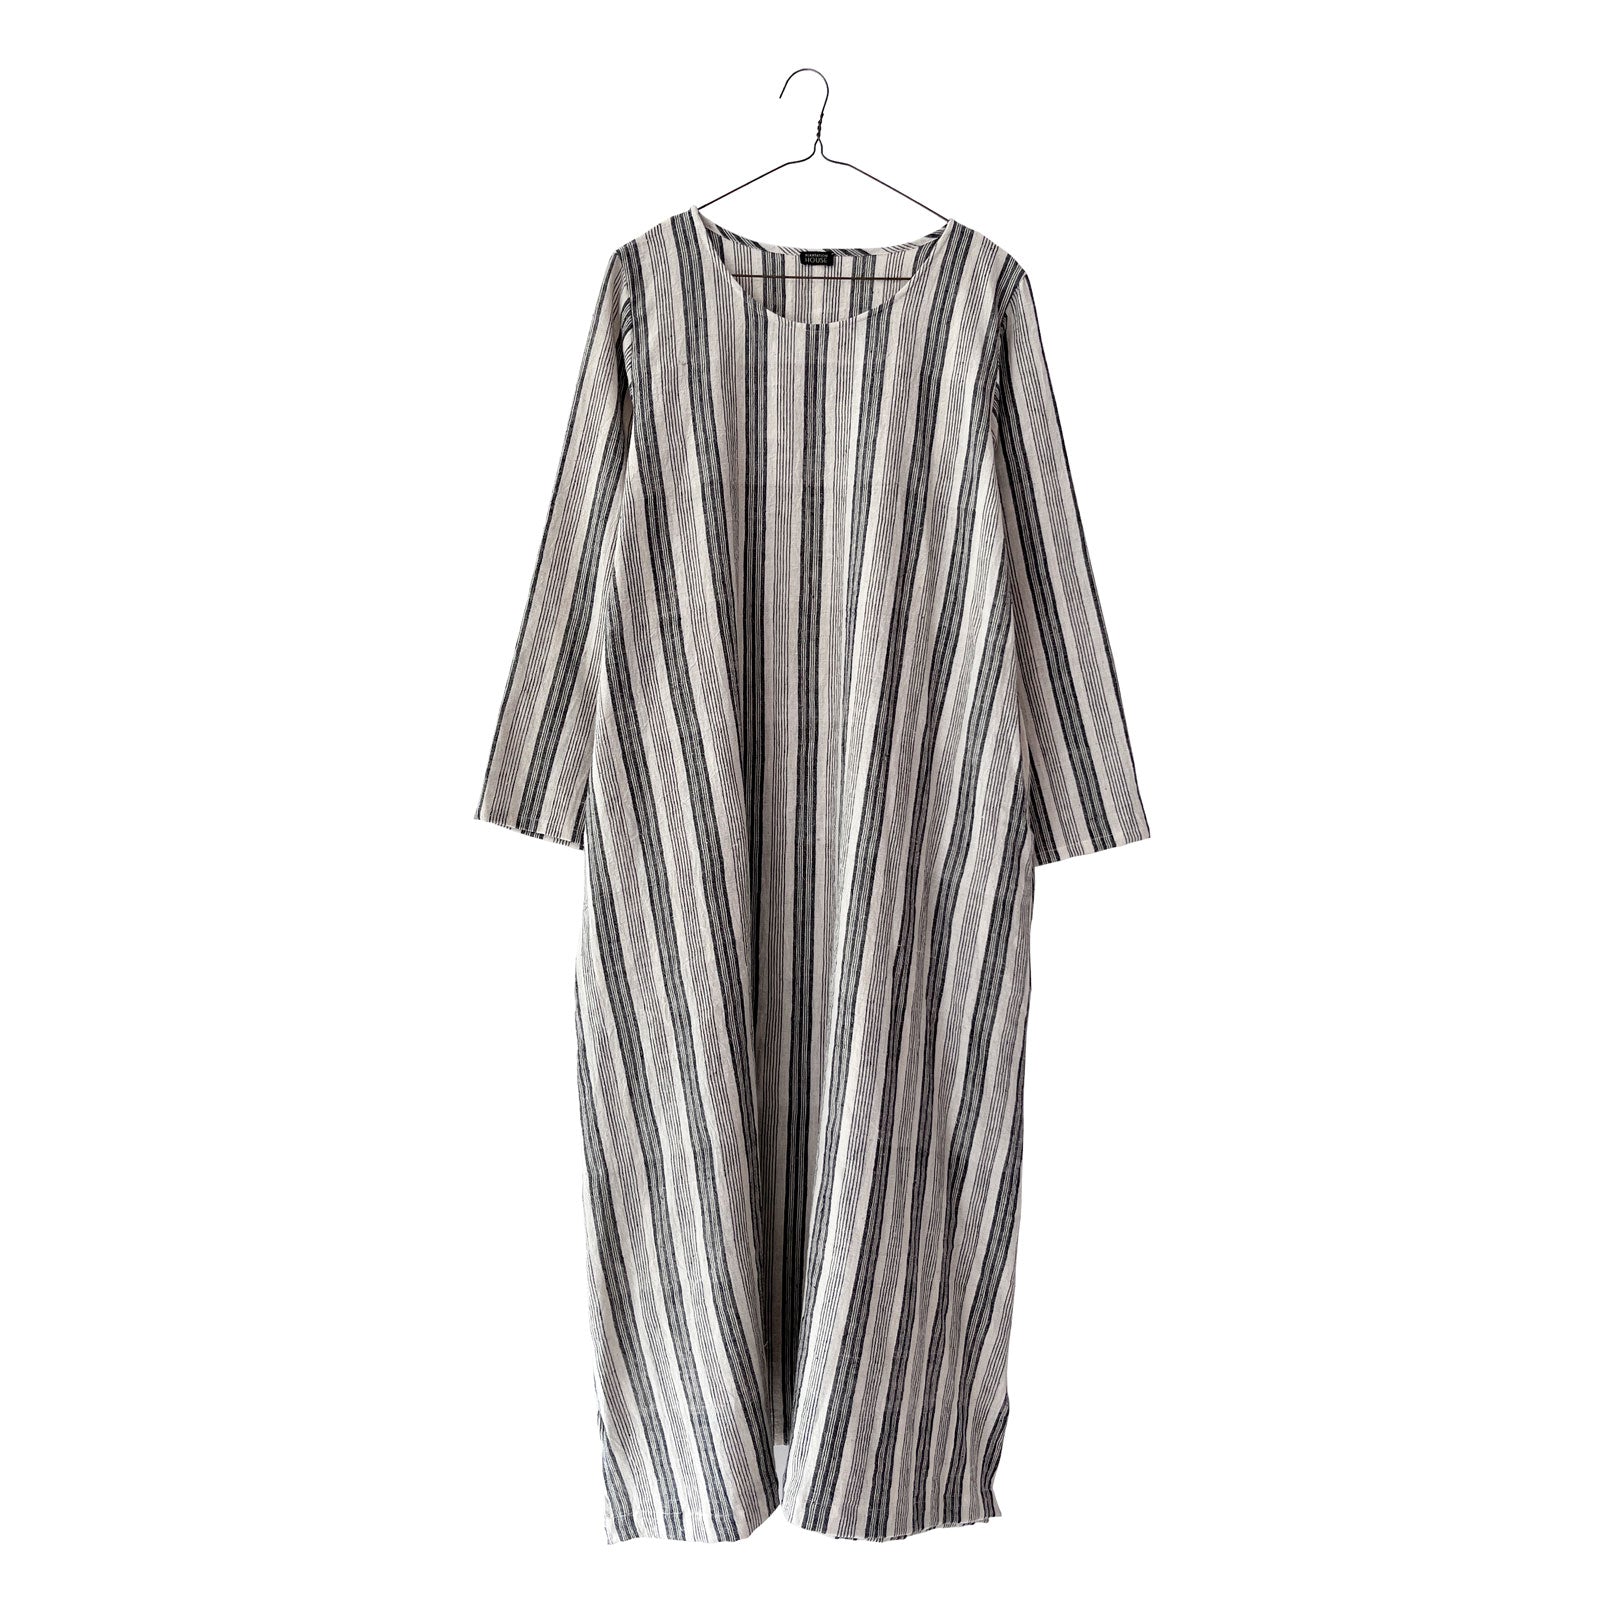 Striped A-line Hermit Dress